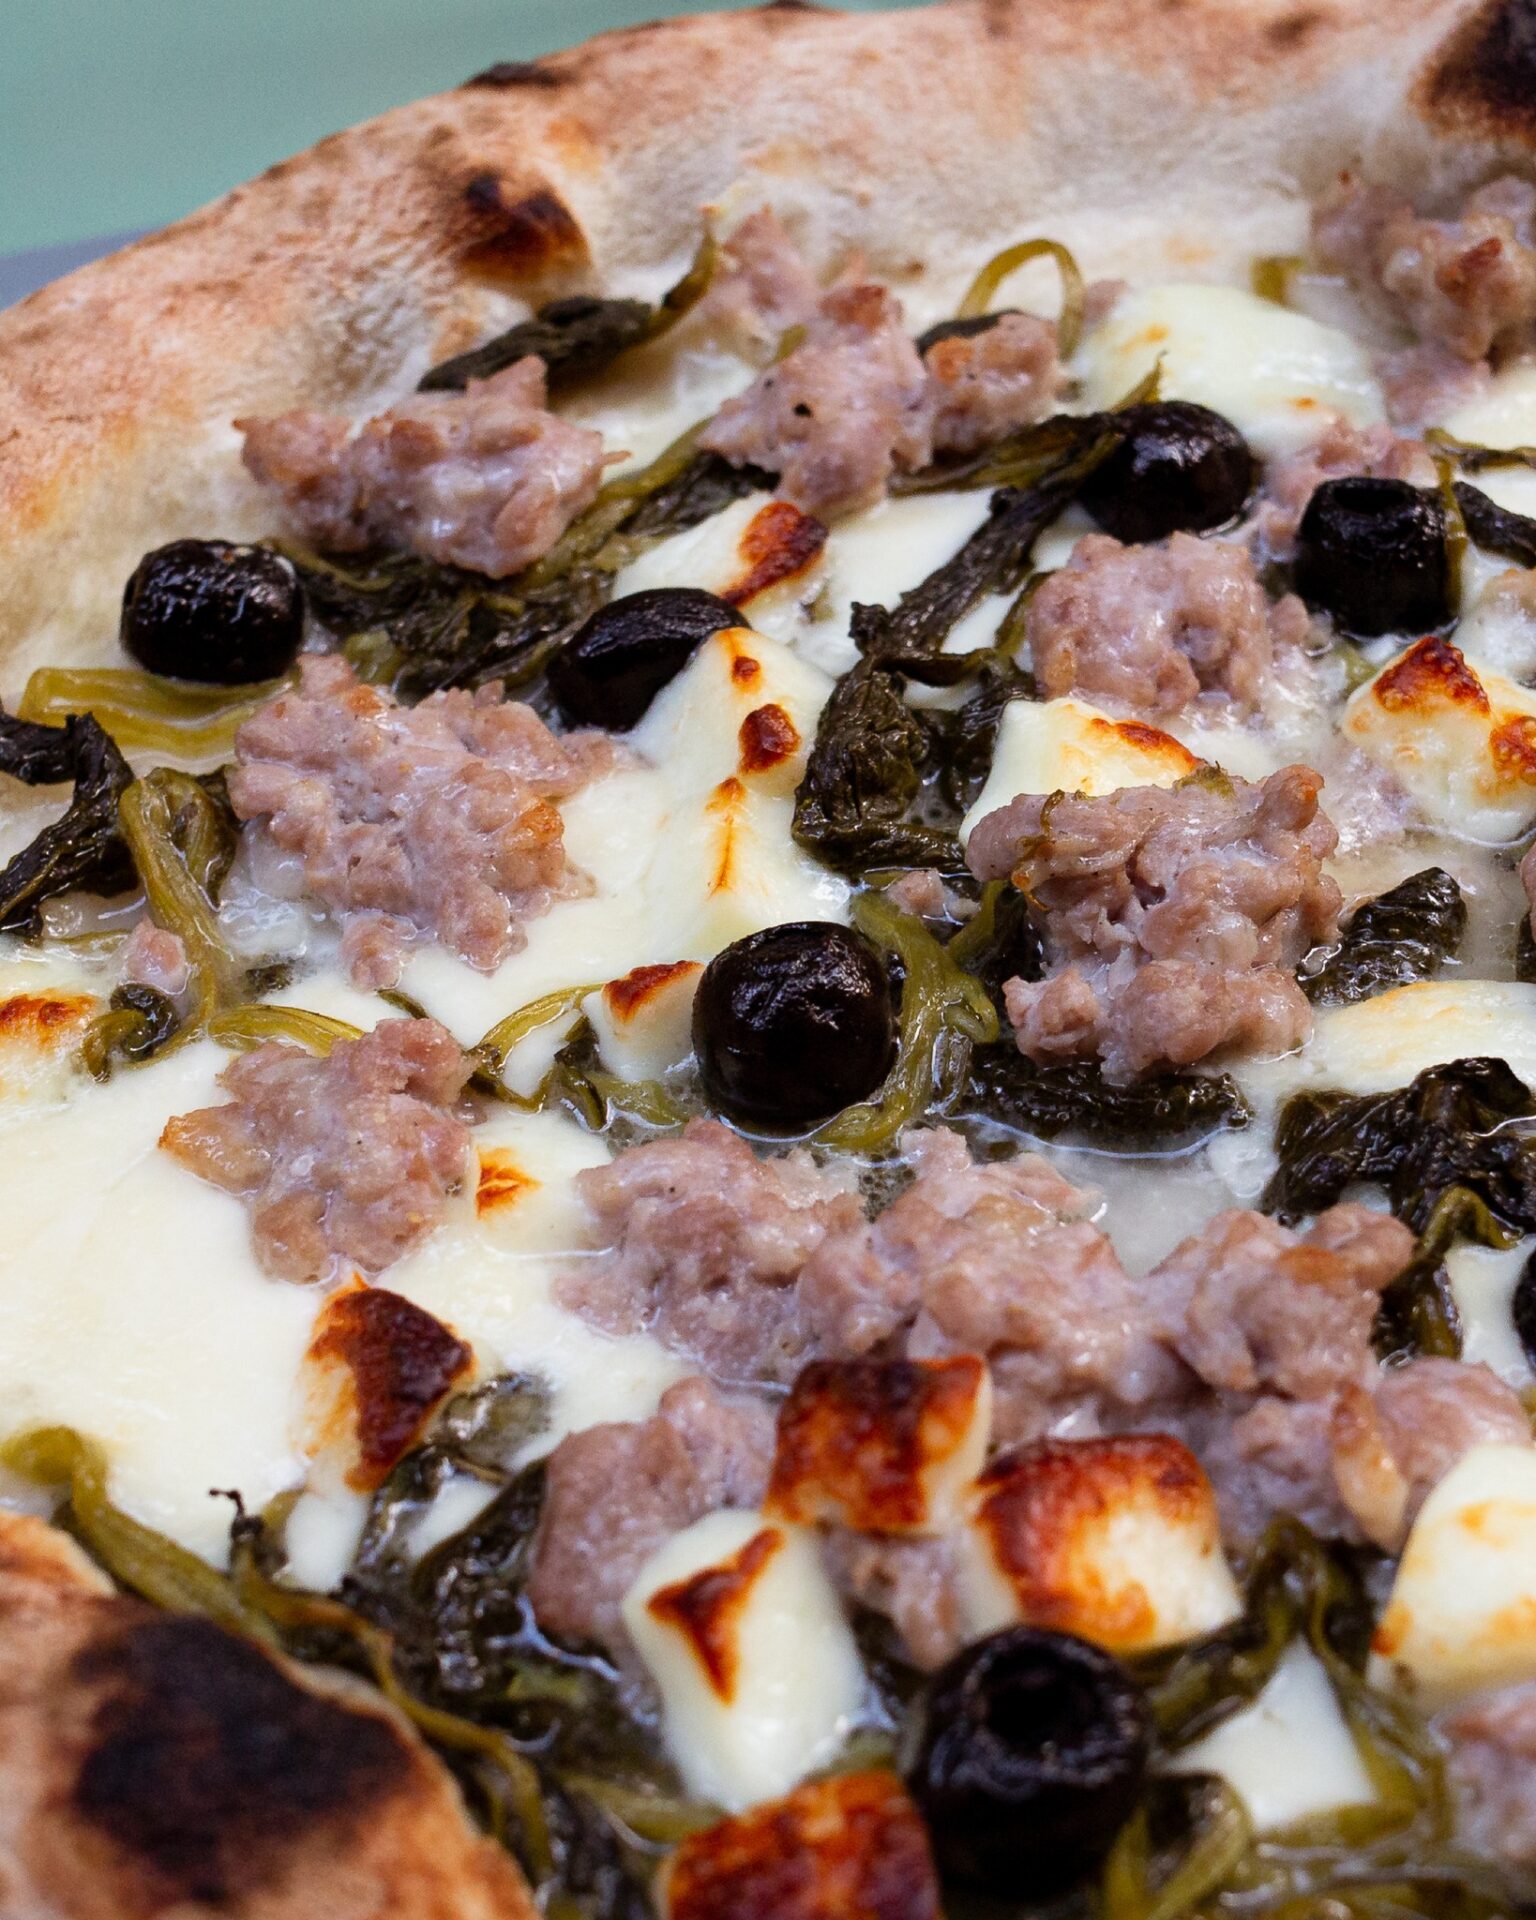 Le migliori pizzerie ad Agrigento, 7 locali consigliati, pizzeria Pizze D'Autore, Pizza